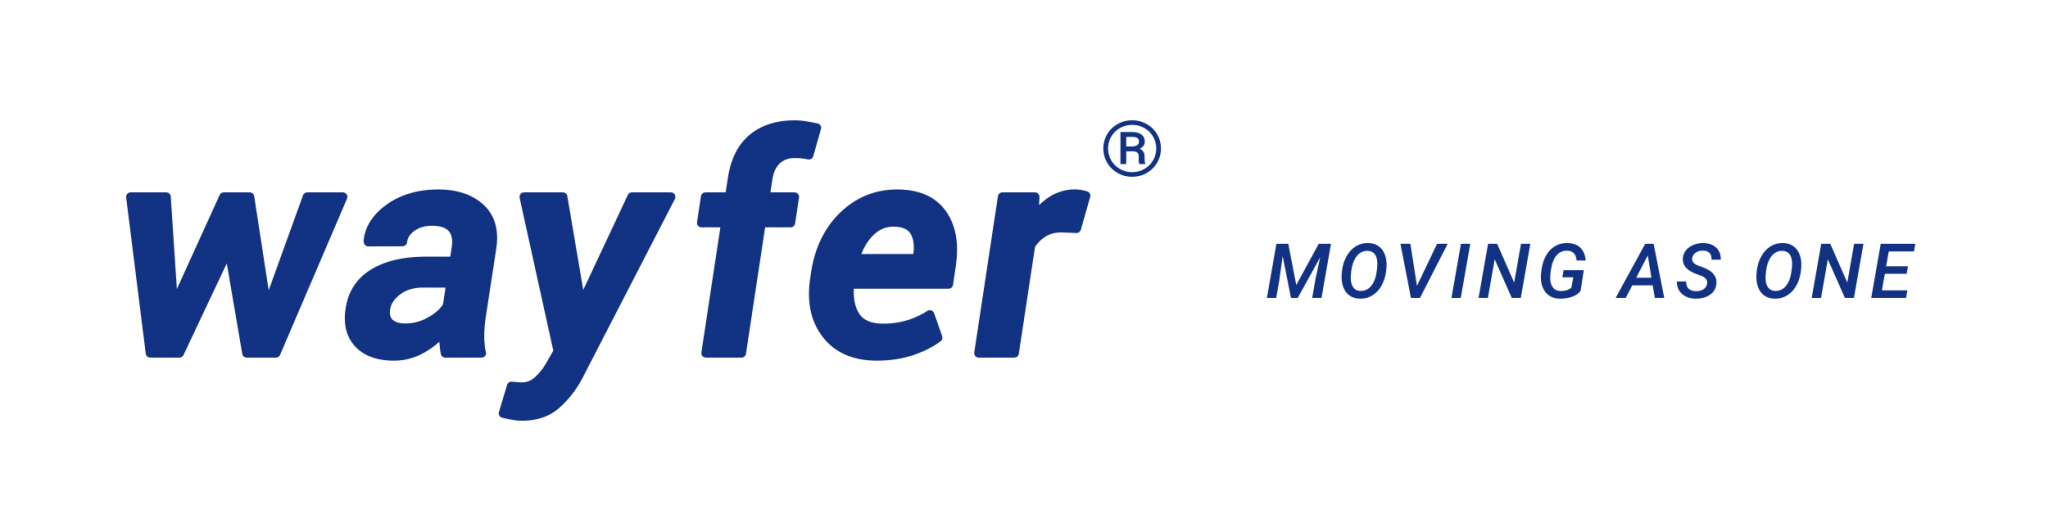 logo_wayfer (1)